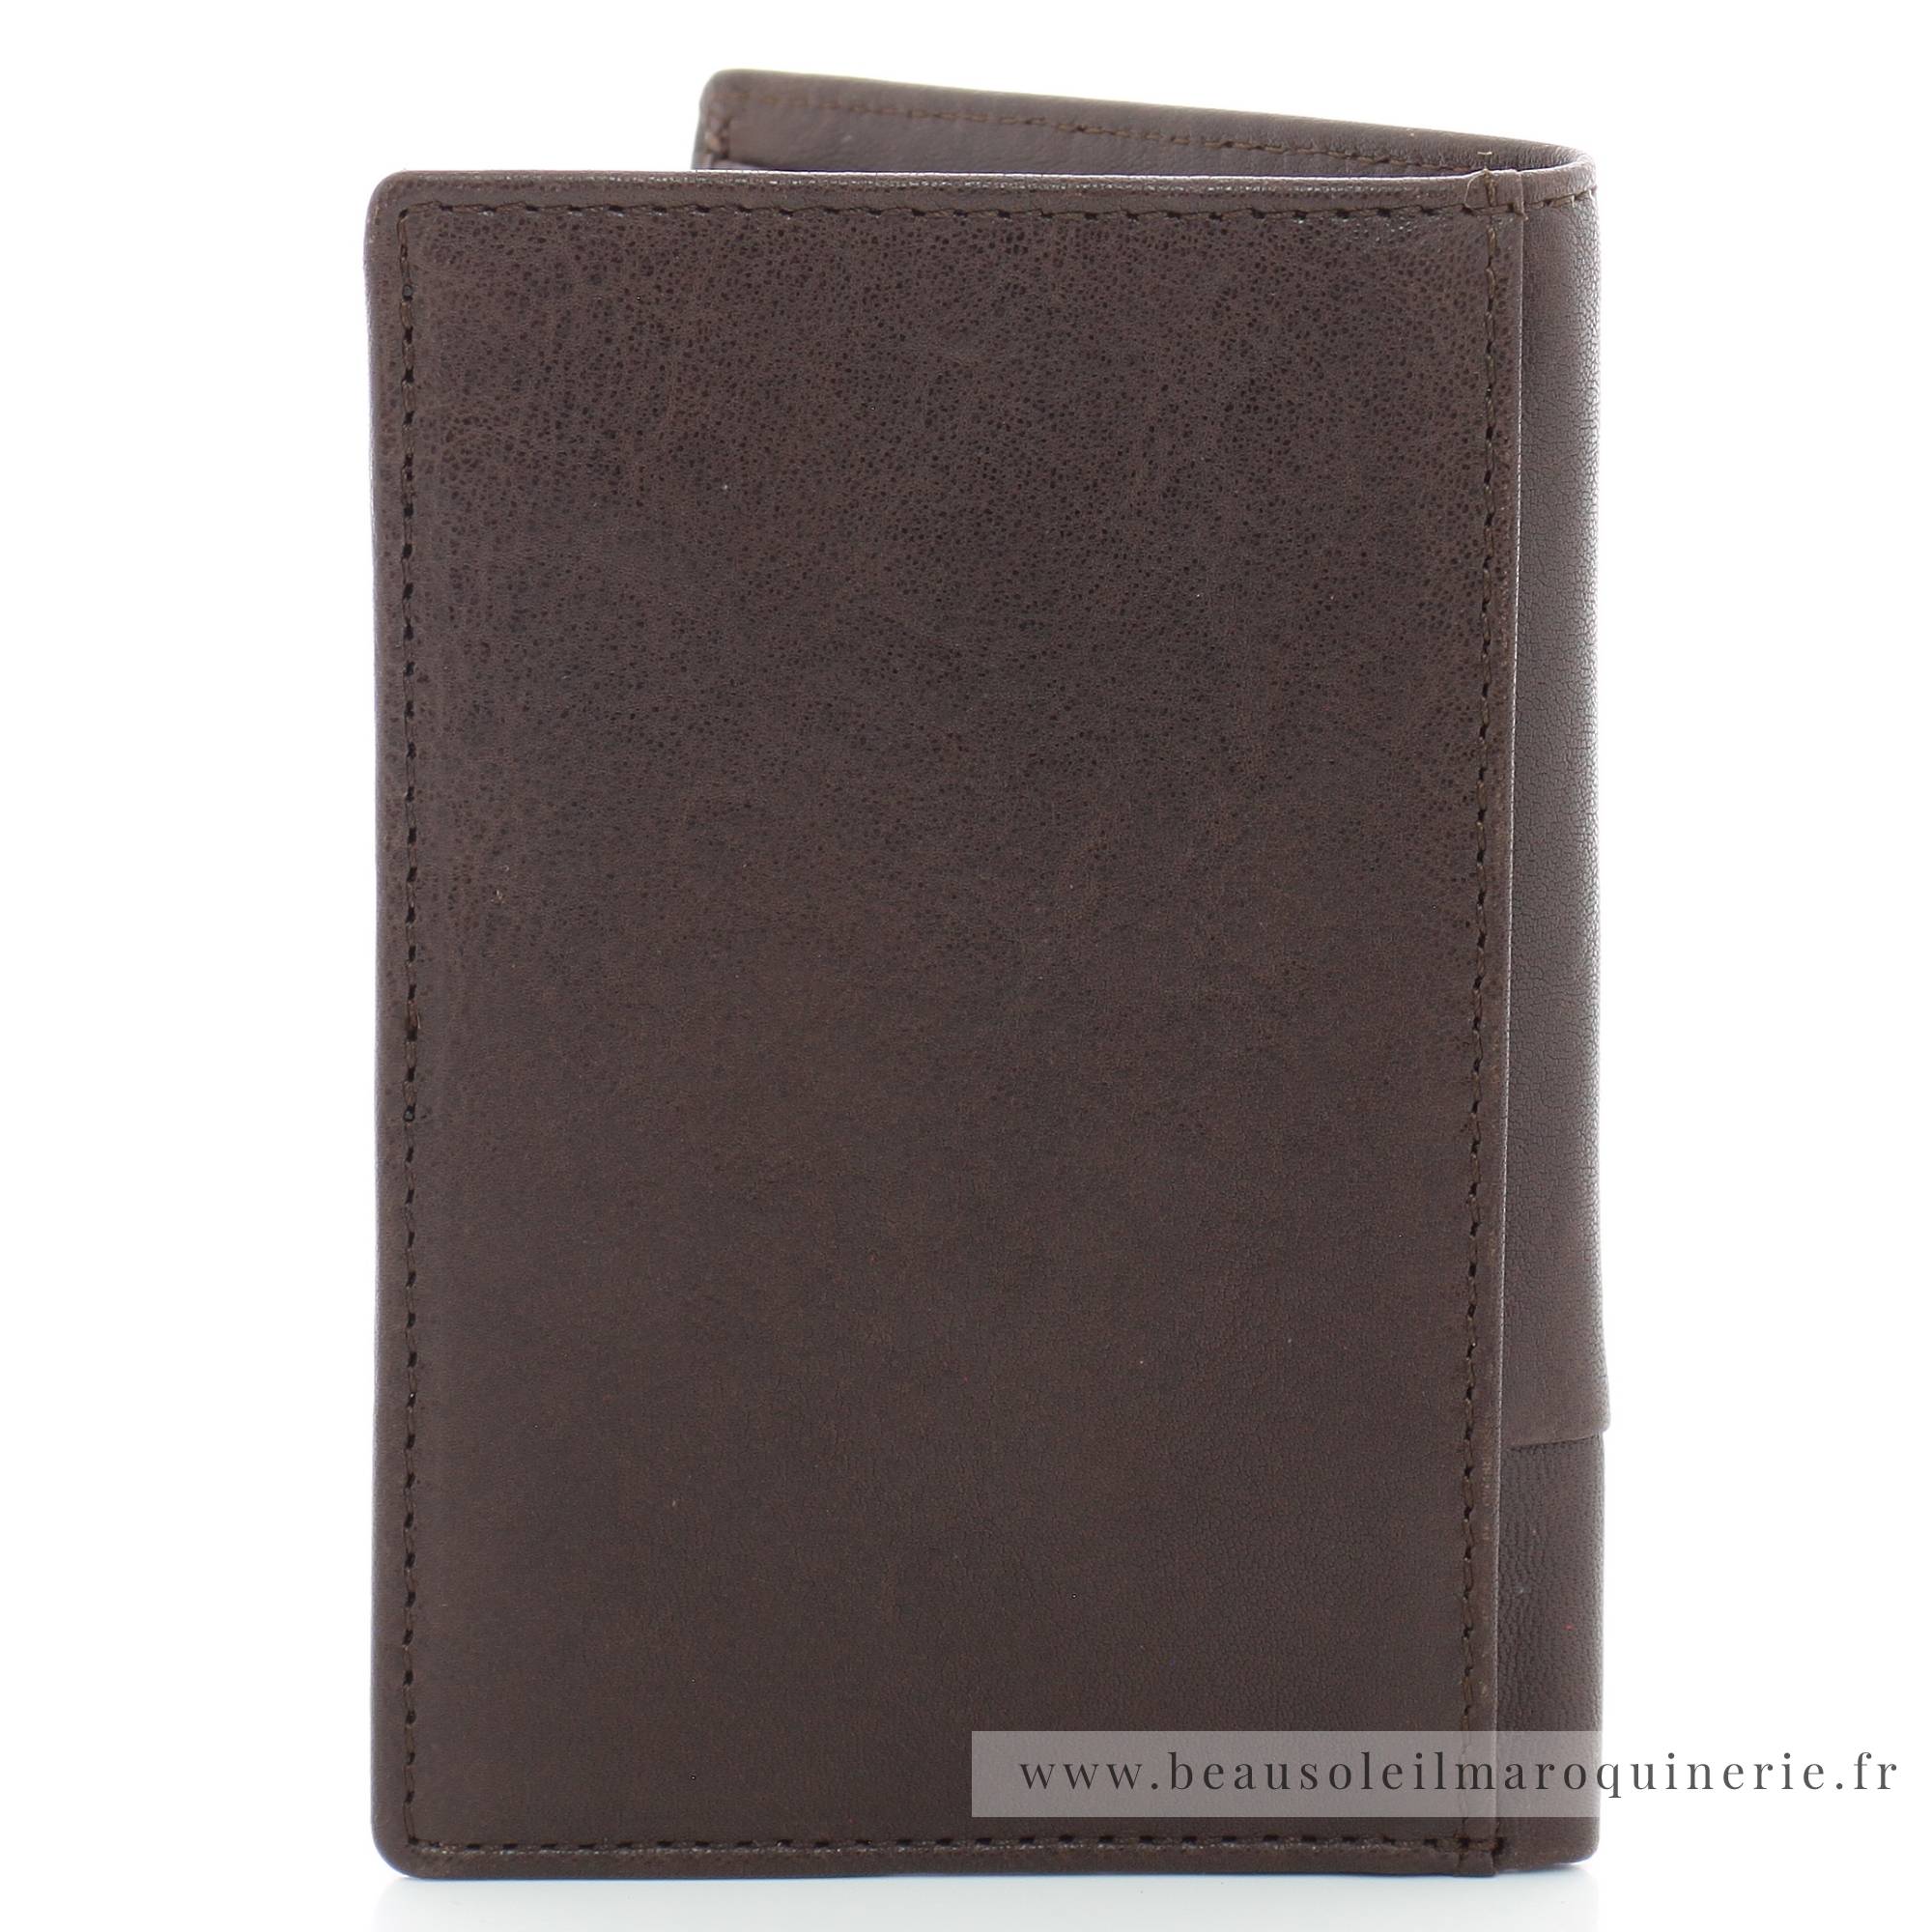 Portefeuille porte-cartes Serge Blanco en cuir ligne Anchorage, référence ANC21052 180  chocolat dos